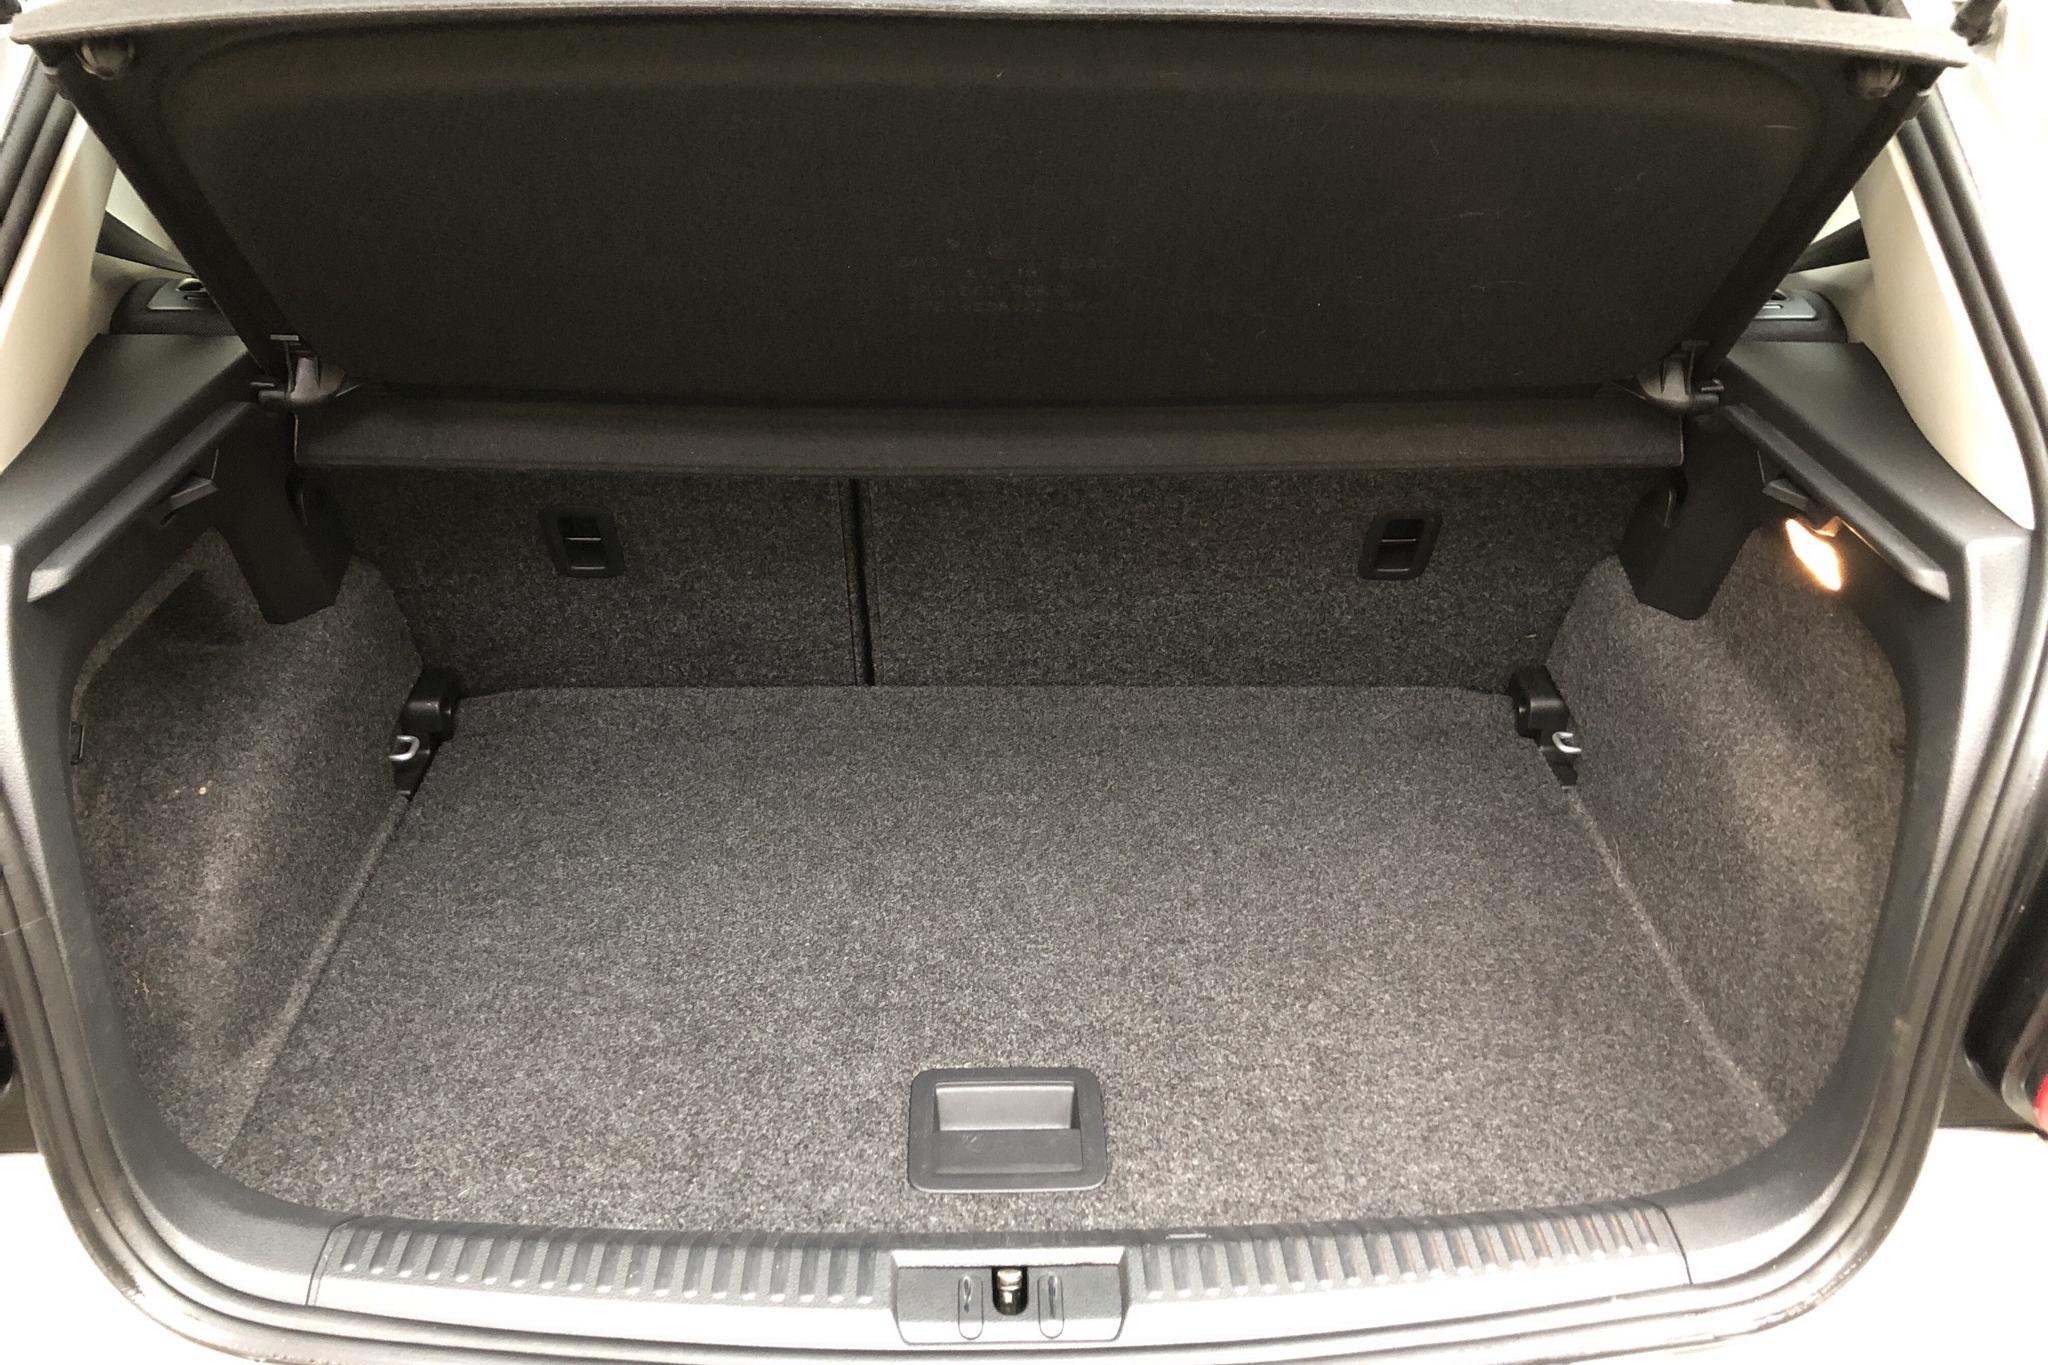 VW Polo 1.2 TSI 5dr (90hk) - 58 950 km - Manual - silver - 2017